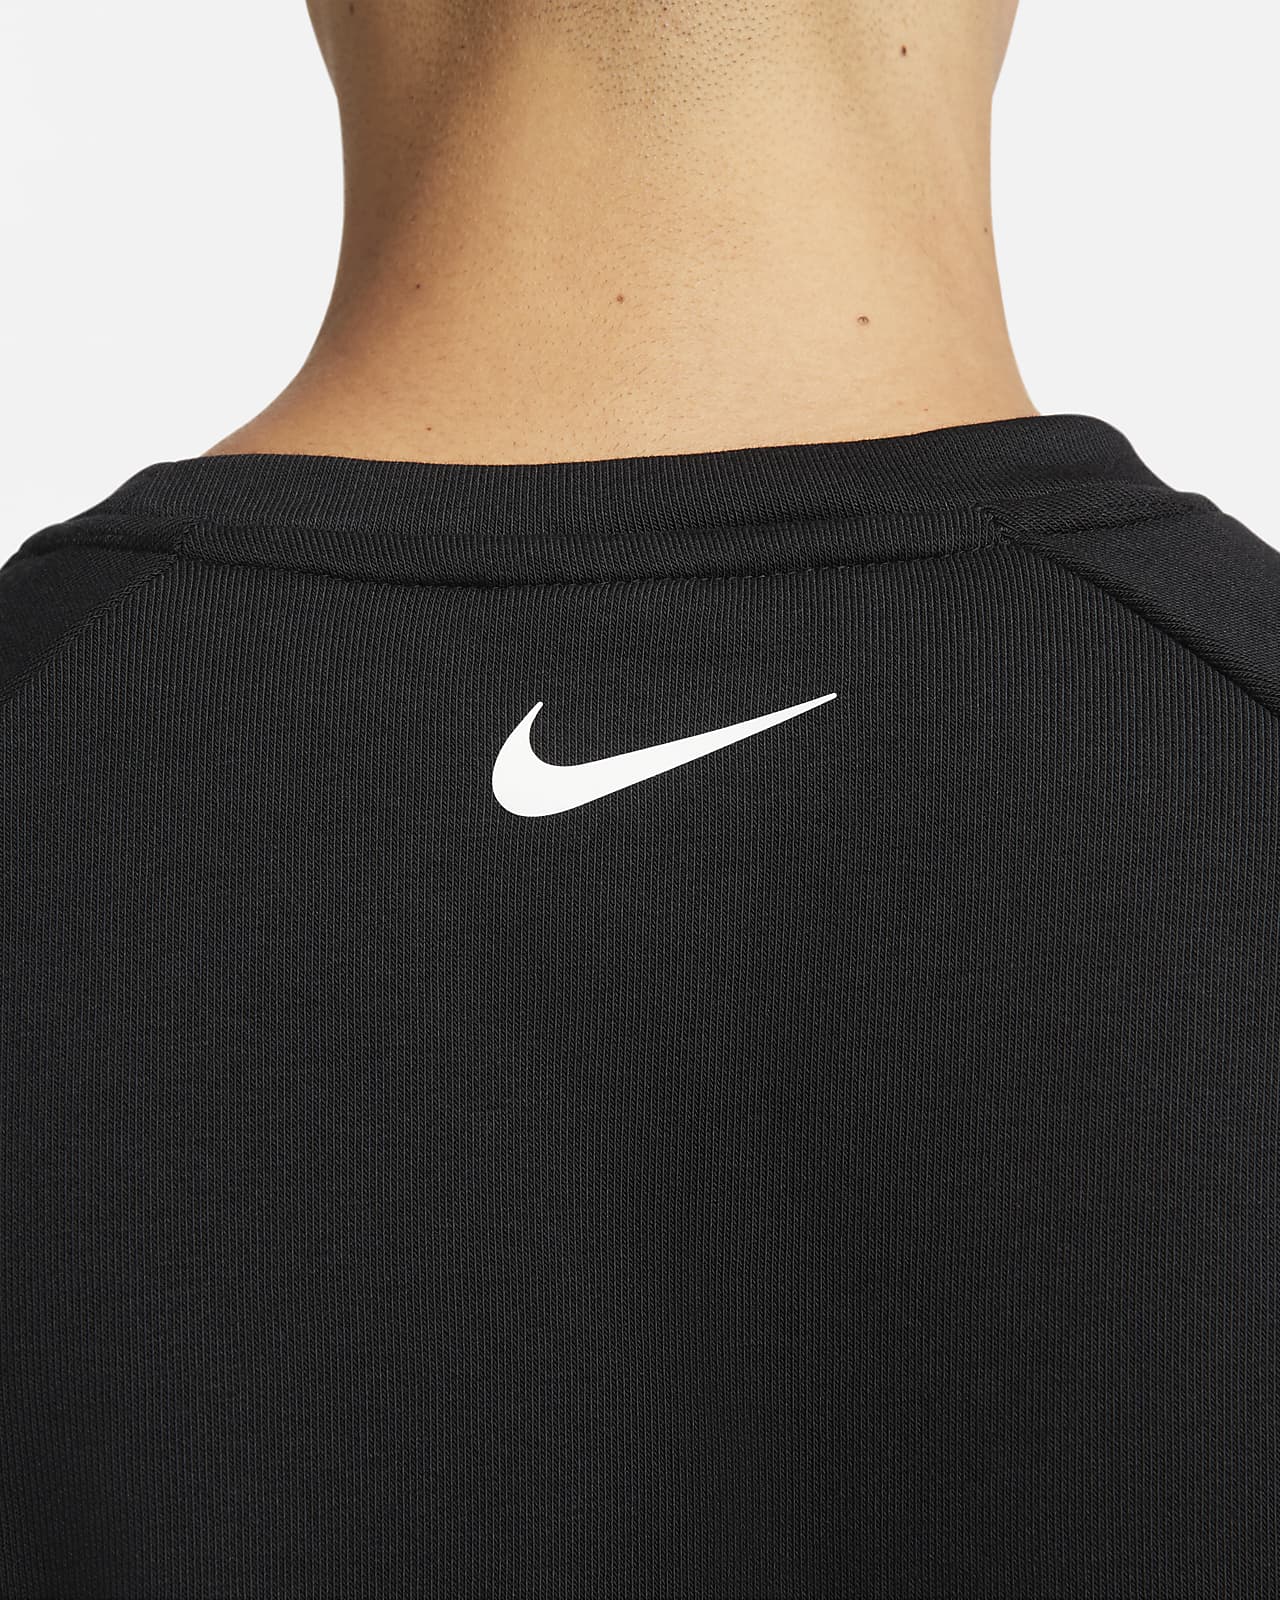 Monarch cliënt Eigenwijs Nike Dri-FIT Men's Long-Sleeve Fitness Top. Nike.com